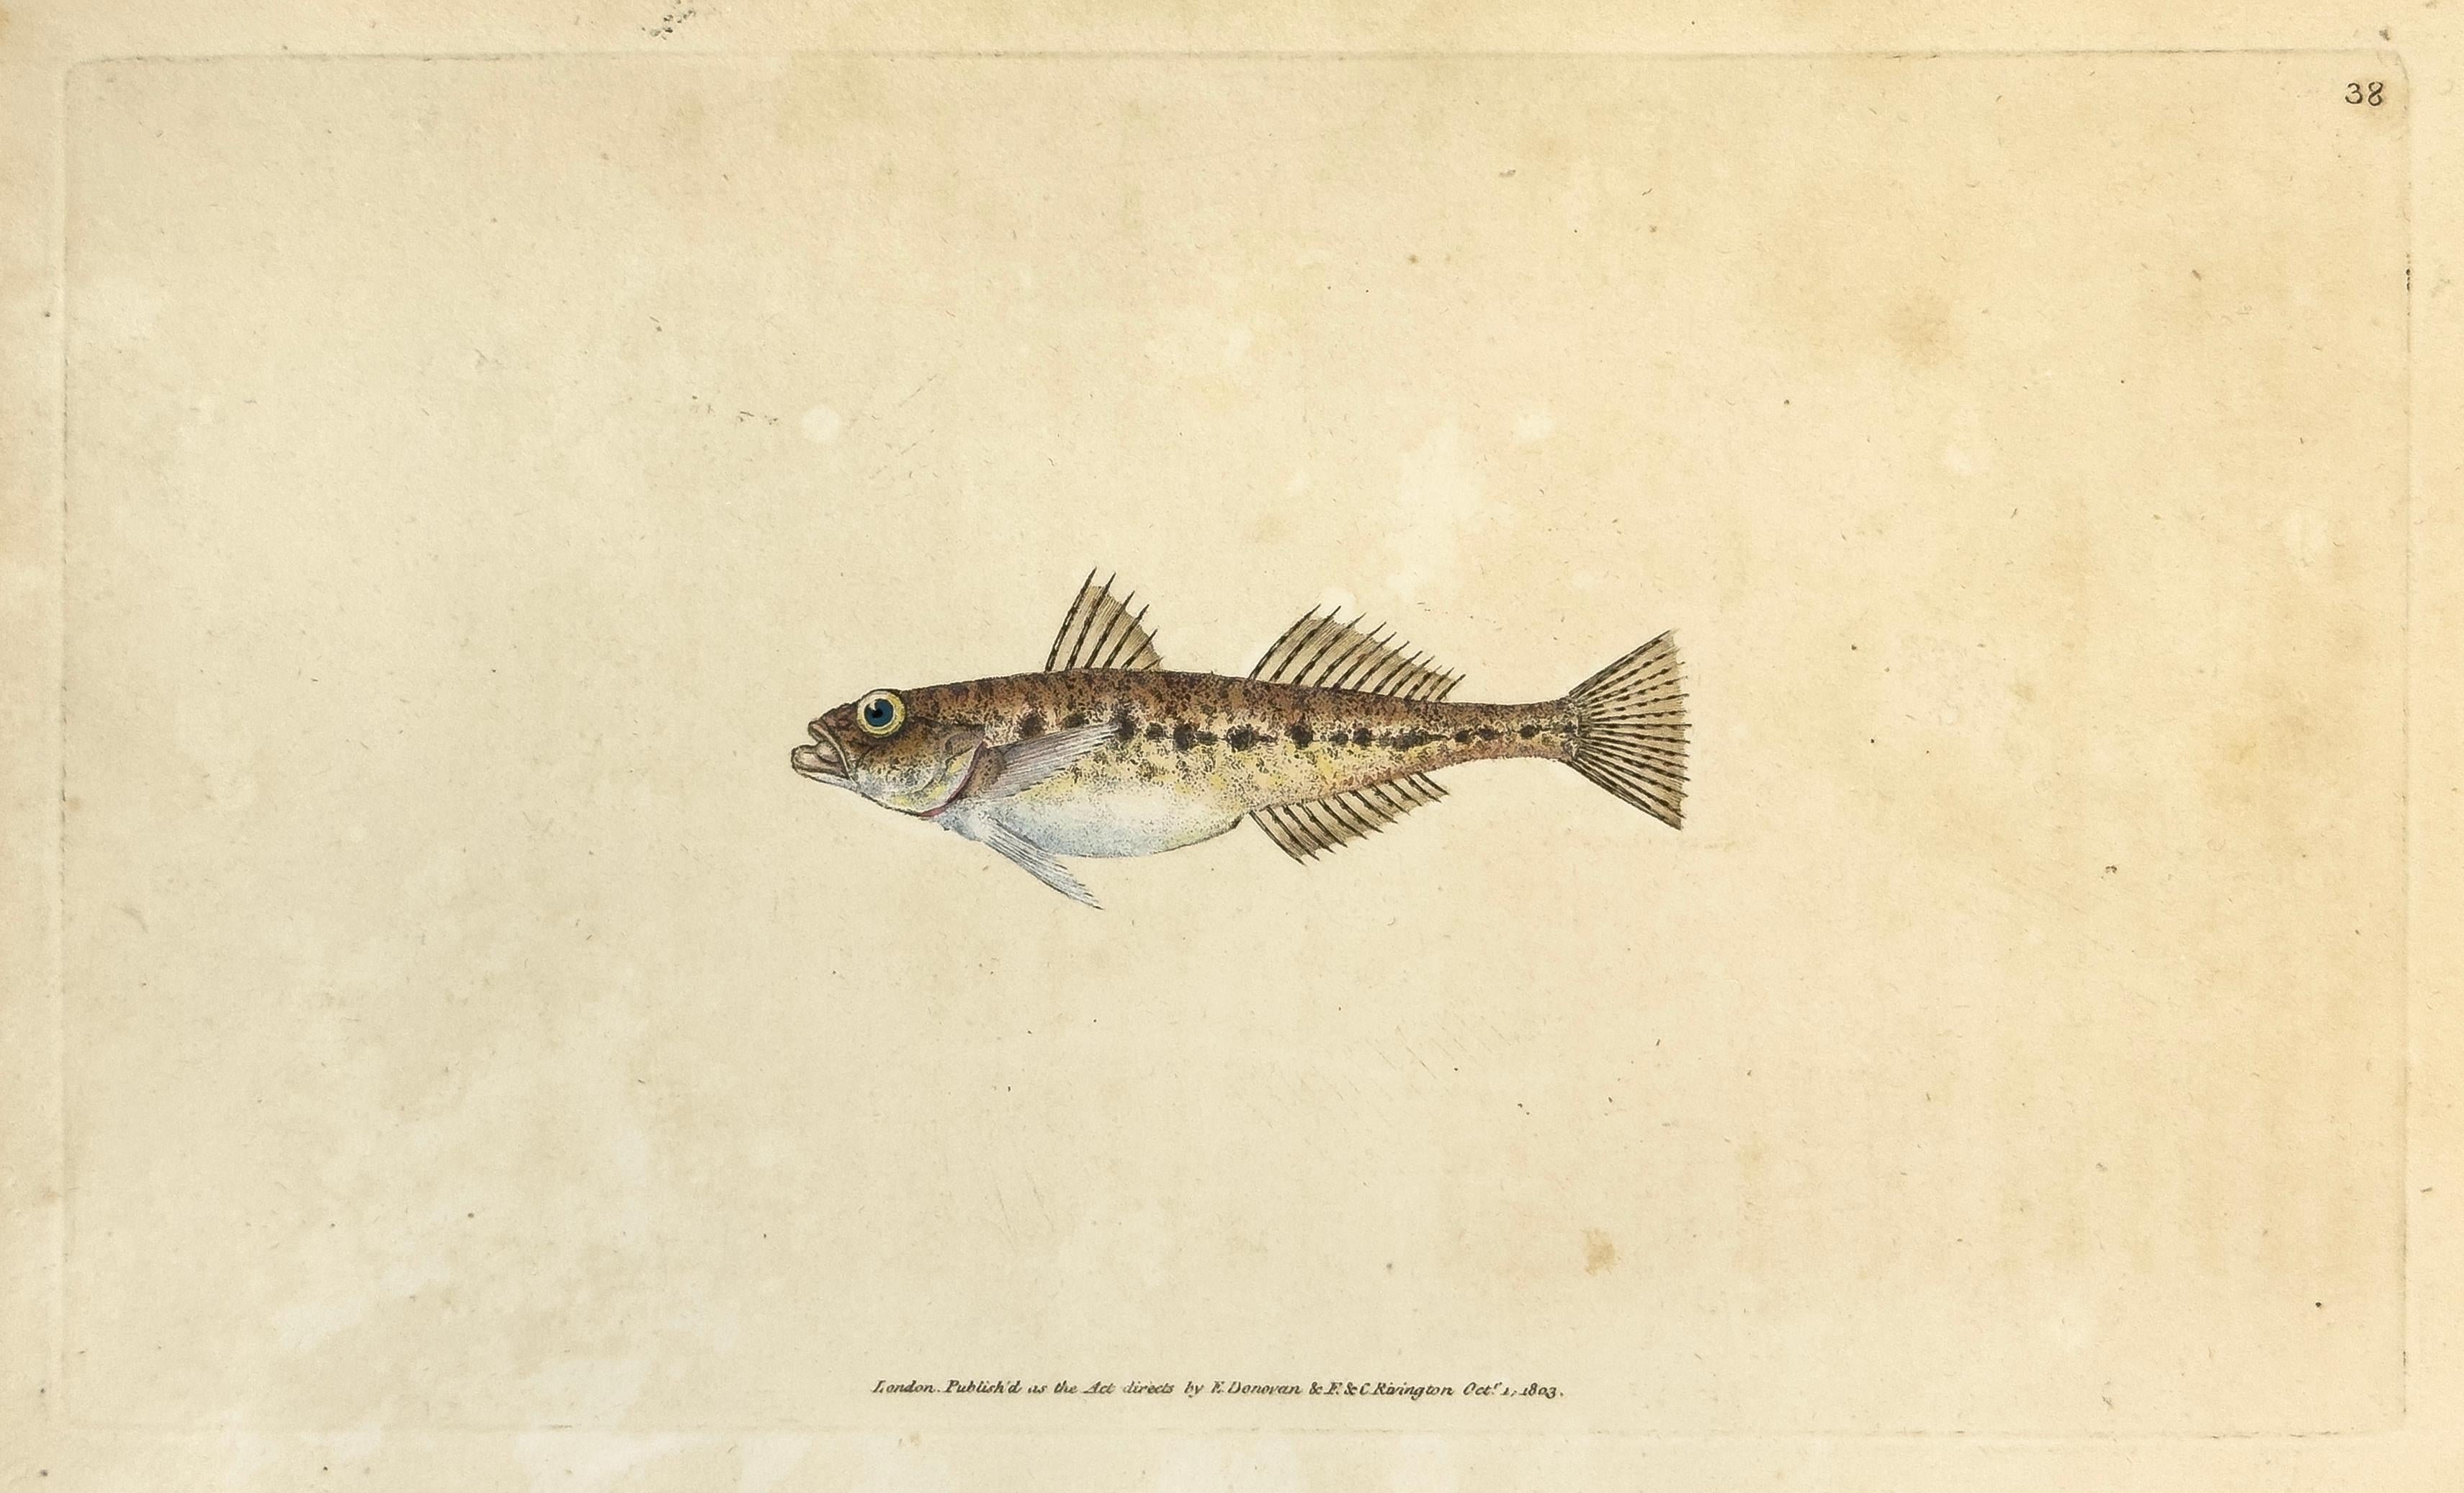 Edward Donovan Animal Print - 38: Gobius minutus, Spotted Goby